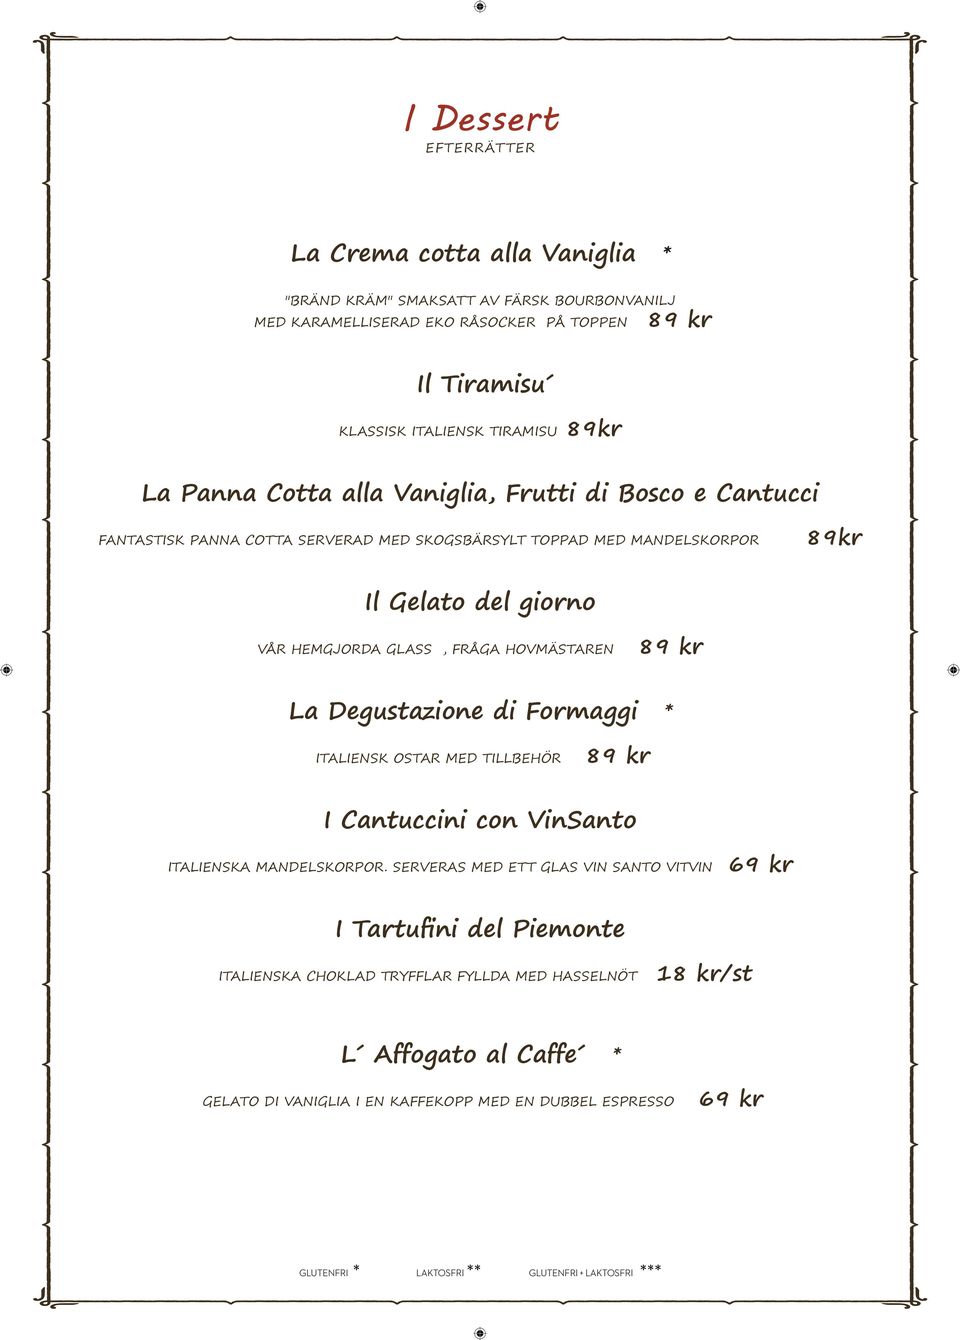 HEMGJORDA GLASS, FRÅGA HOVMÄSTAREN La Degustazione di Formaggi * ITALIENSK OSTAR MED TILLBEHÖR I Cantuccini con VinSanto ITALIENSKA MANDELSKORPOR.